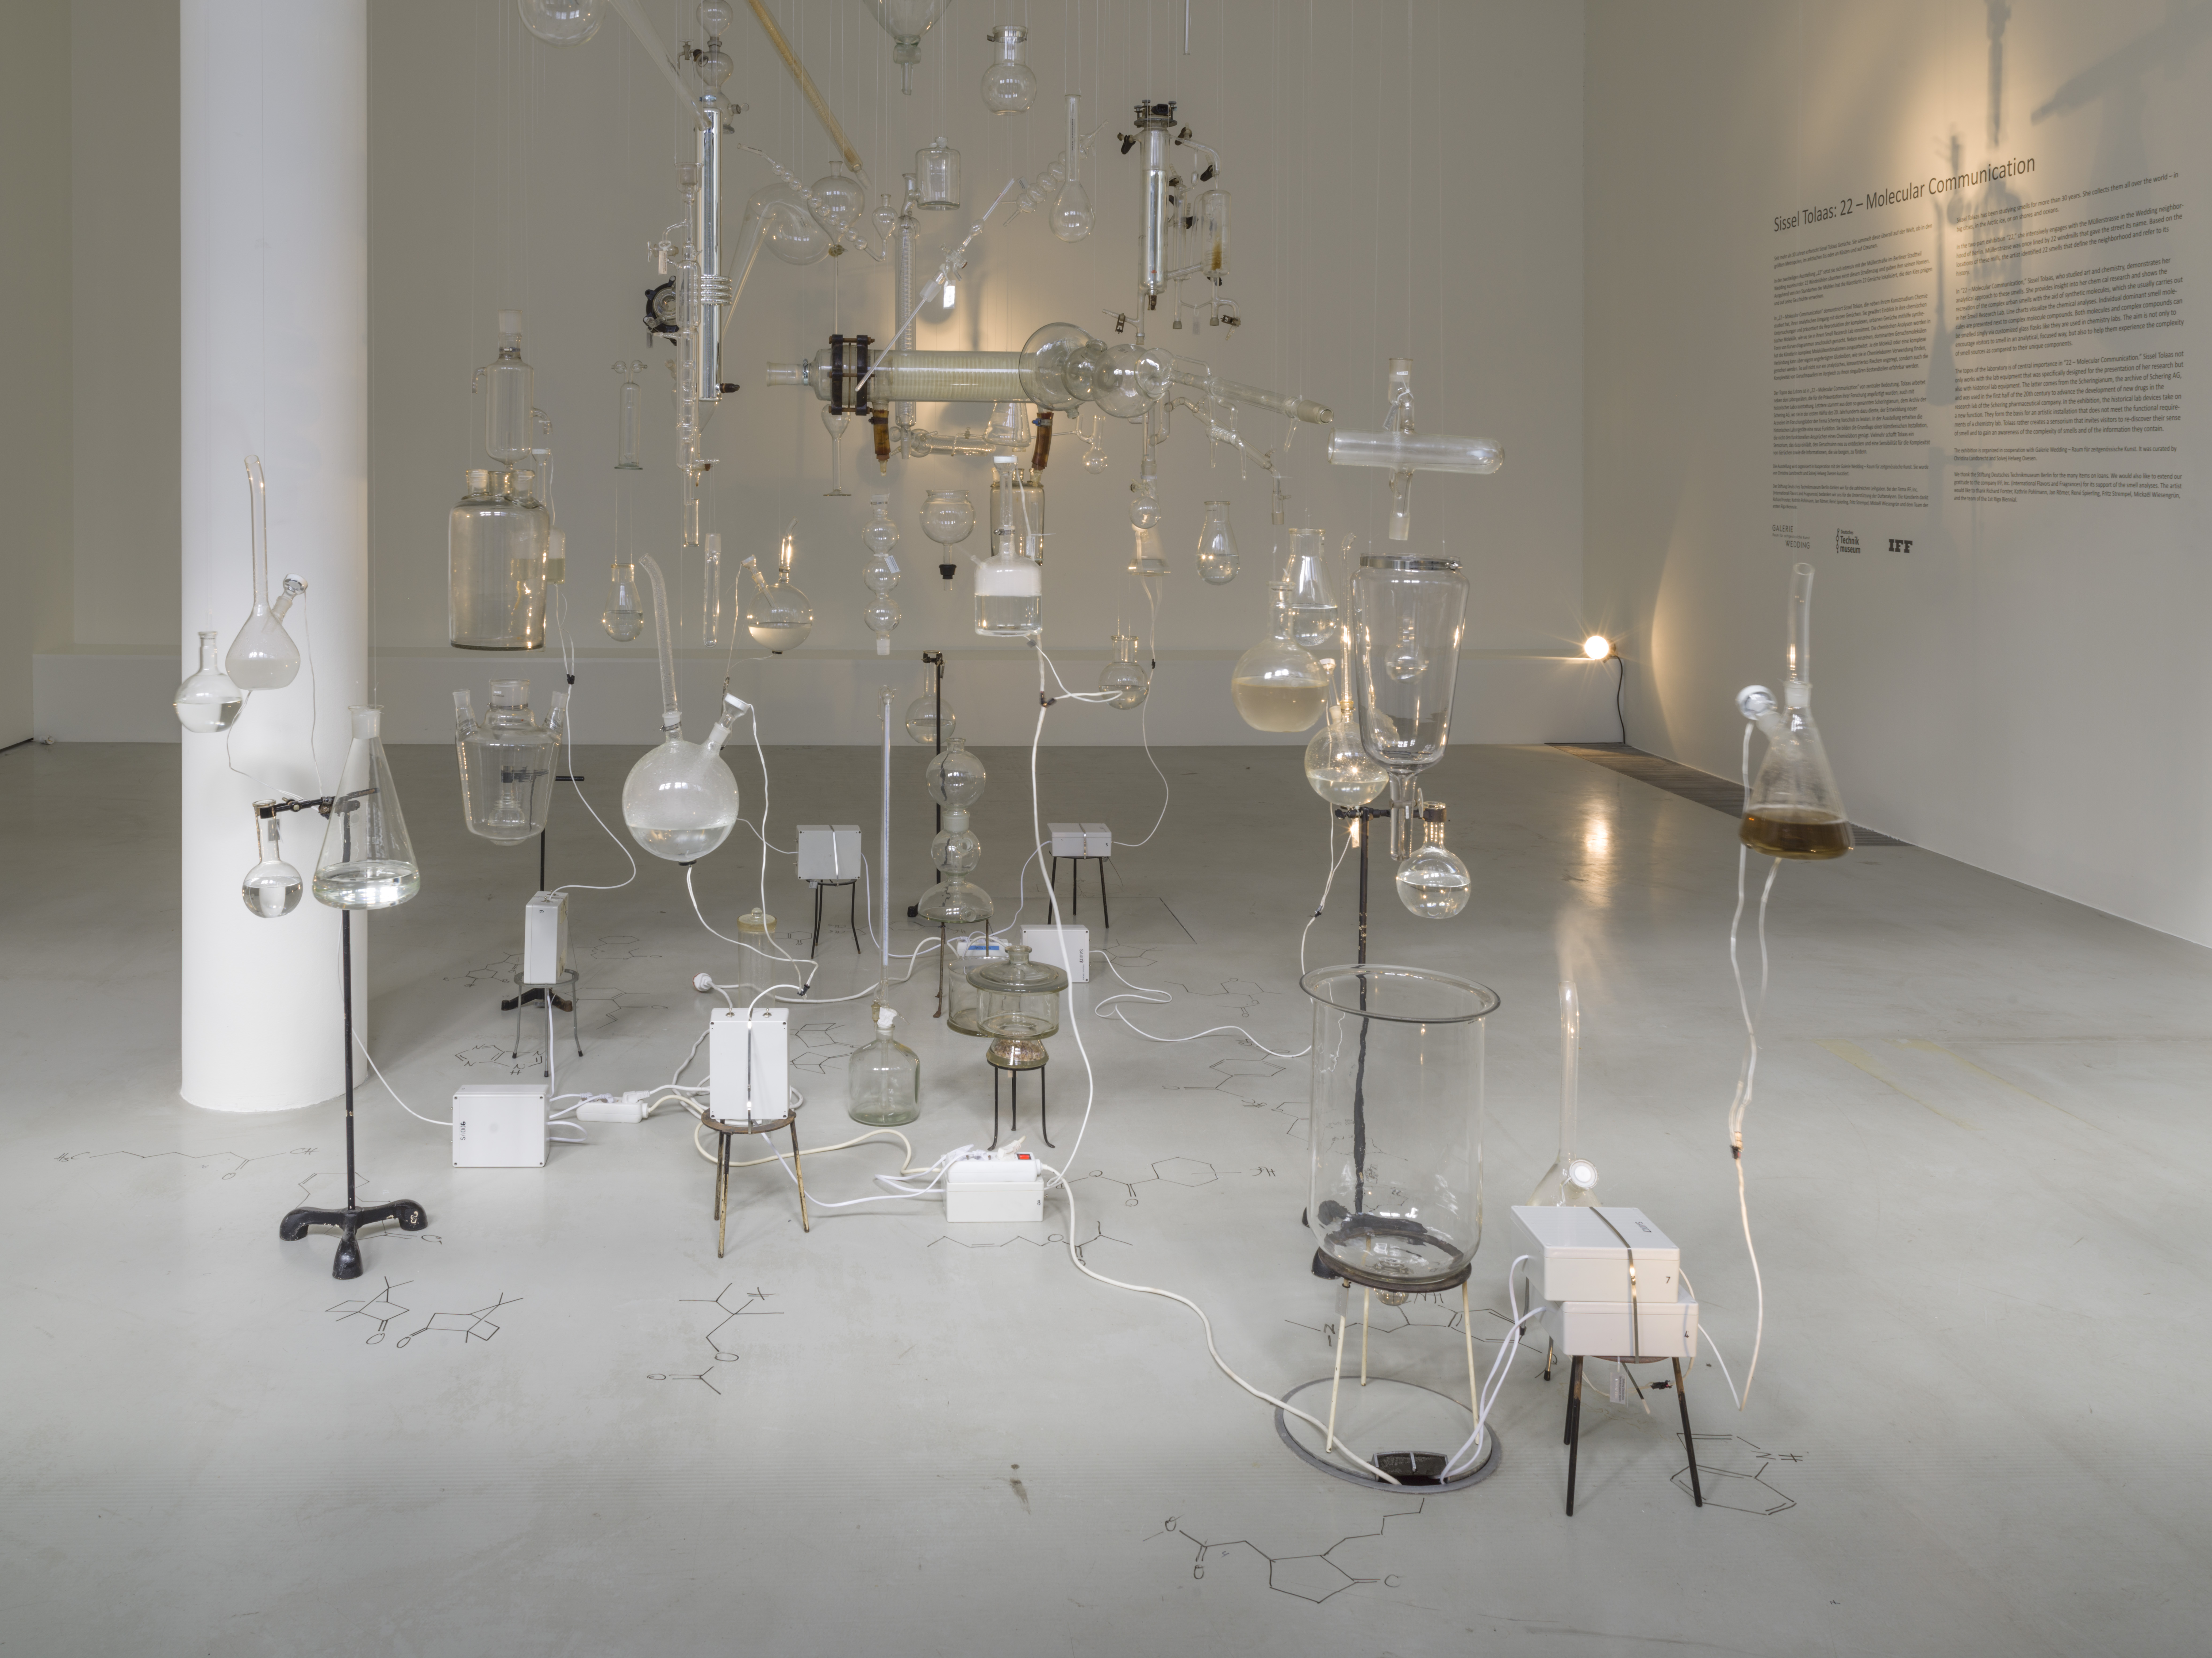 Ausstellungsansicht „22 – Molecular Communication“ von Sissel Tolaas in der Schering Stiftung, Berlin 2019